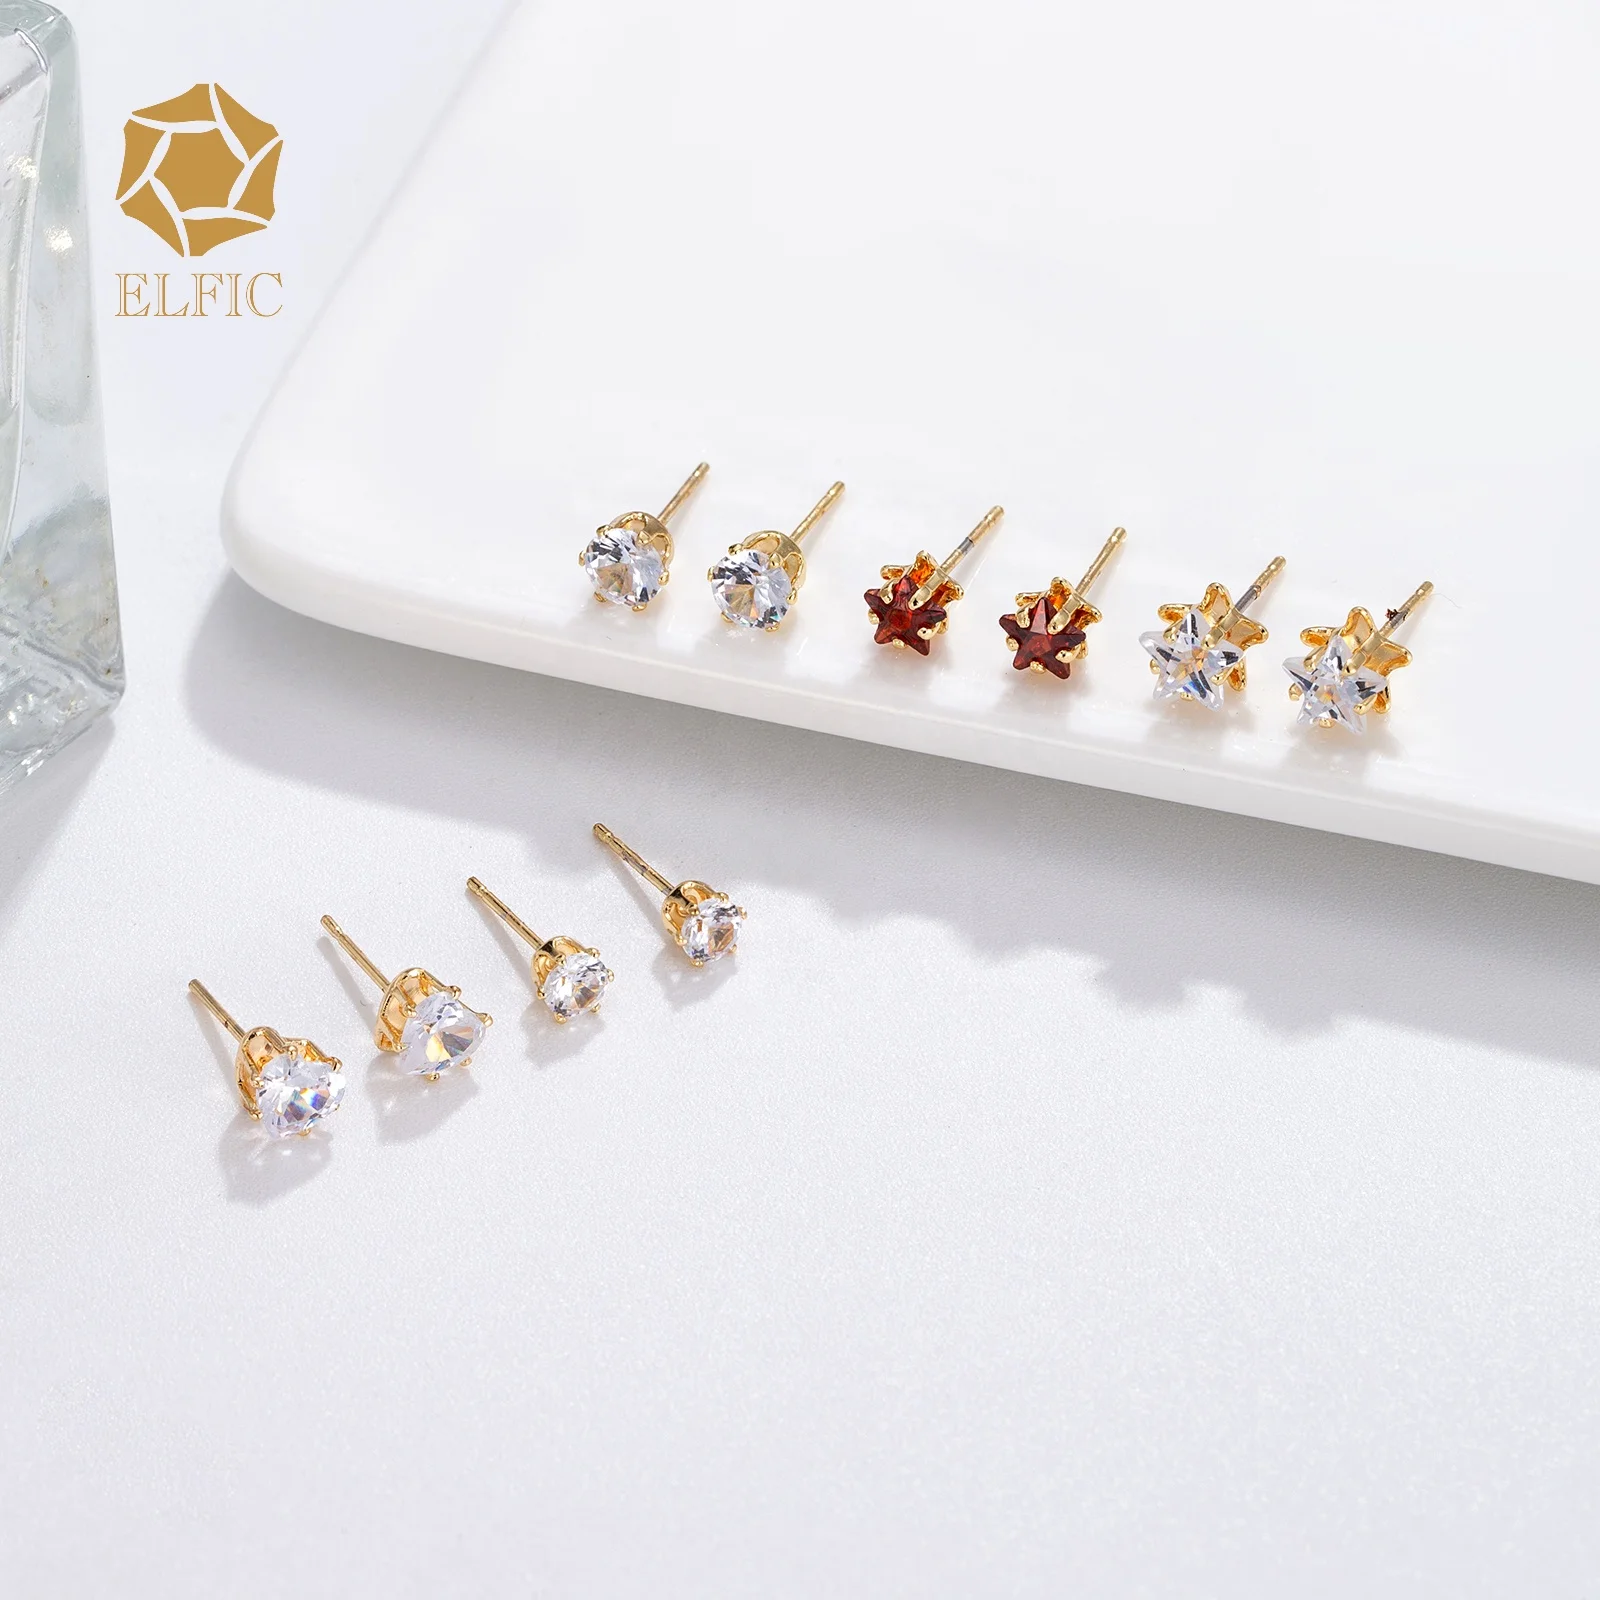 

Elfic wholesale fashion 14k gold plated jewelry aretes de oro cute earrings heart star shape small earrings zircon joyeria joyas